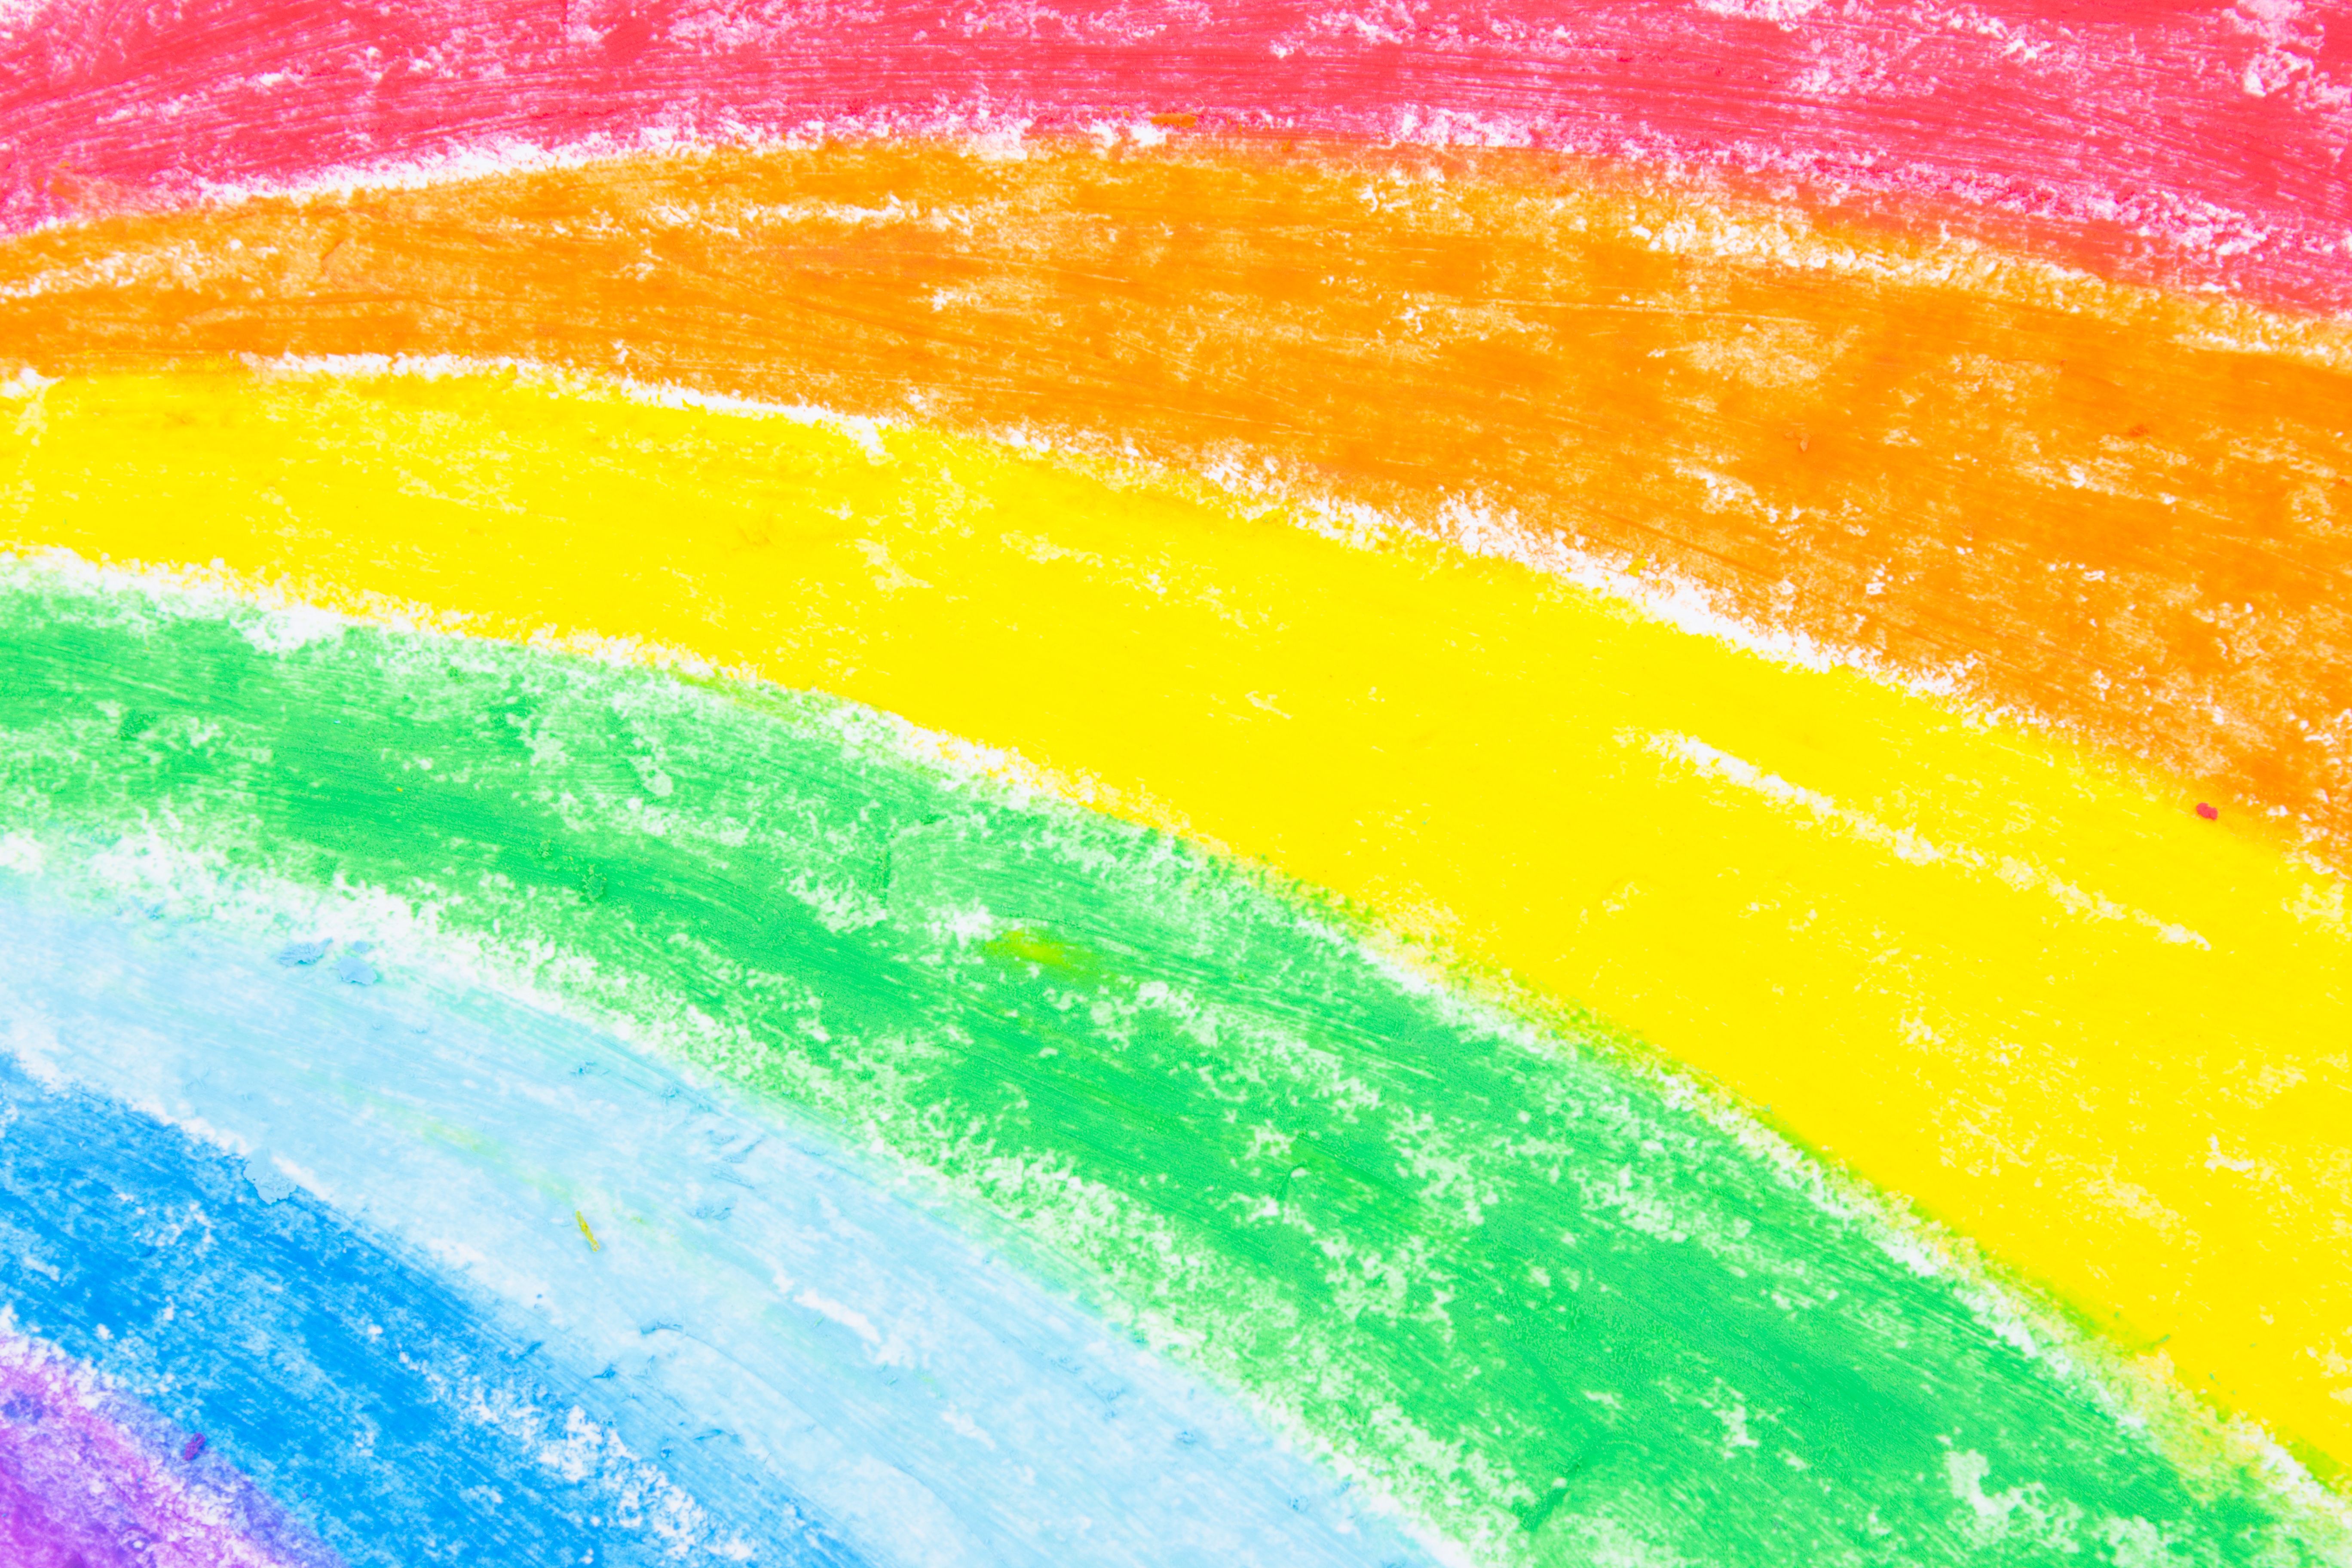 Rainbow Crayon Drawing - HD Wallpaper 